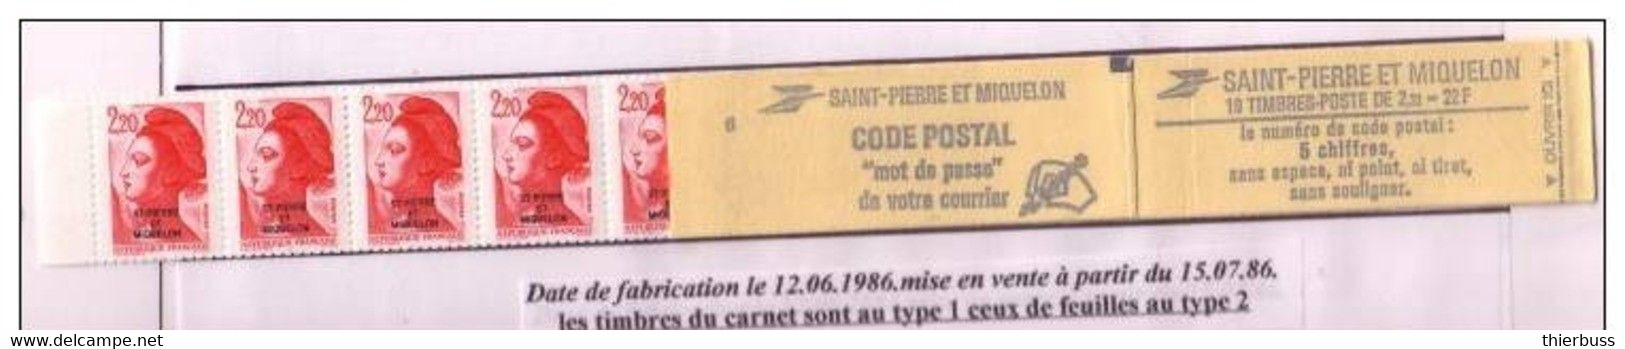 2F20 LIBERTE Carnet De St Pierre ET MIQUELON - Booklets